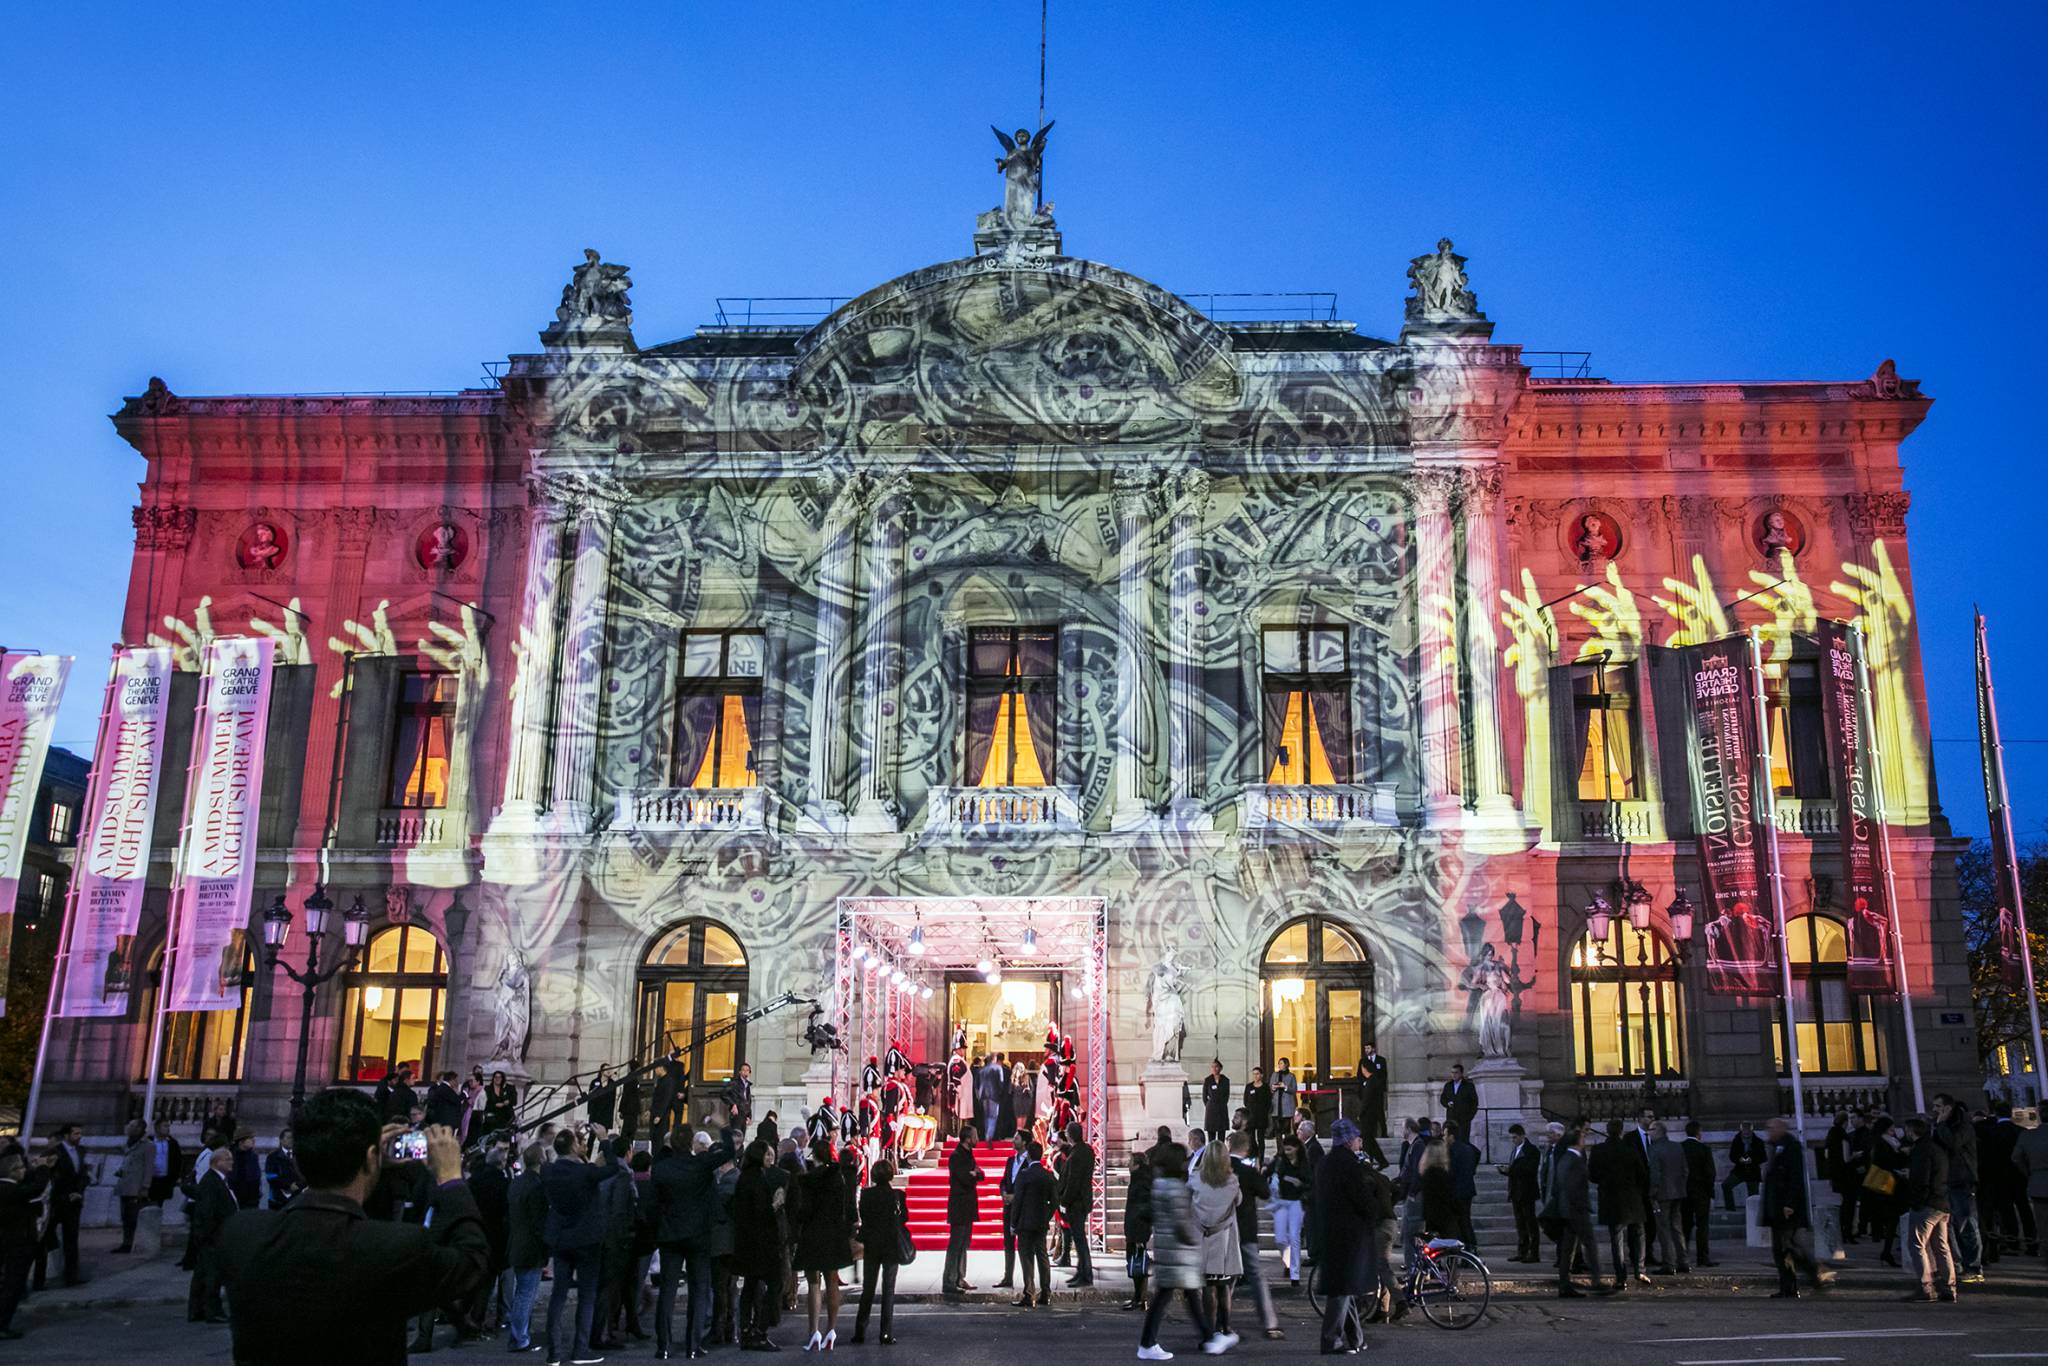 The Grand Théâtre de Genève lit up by Gerry Hofstetter.